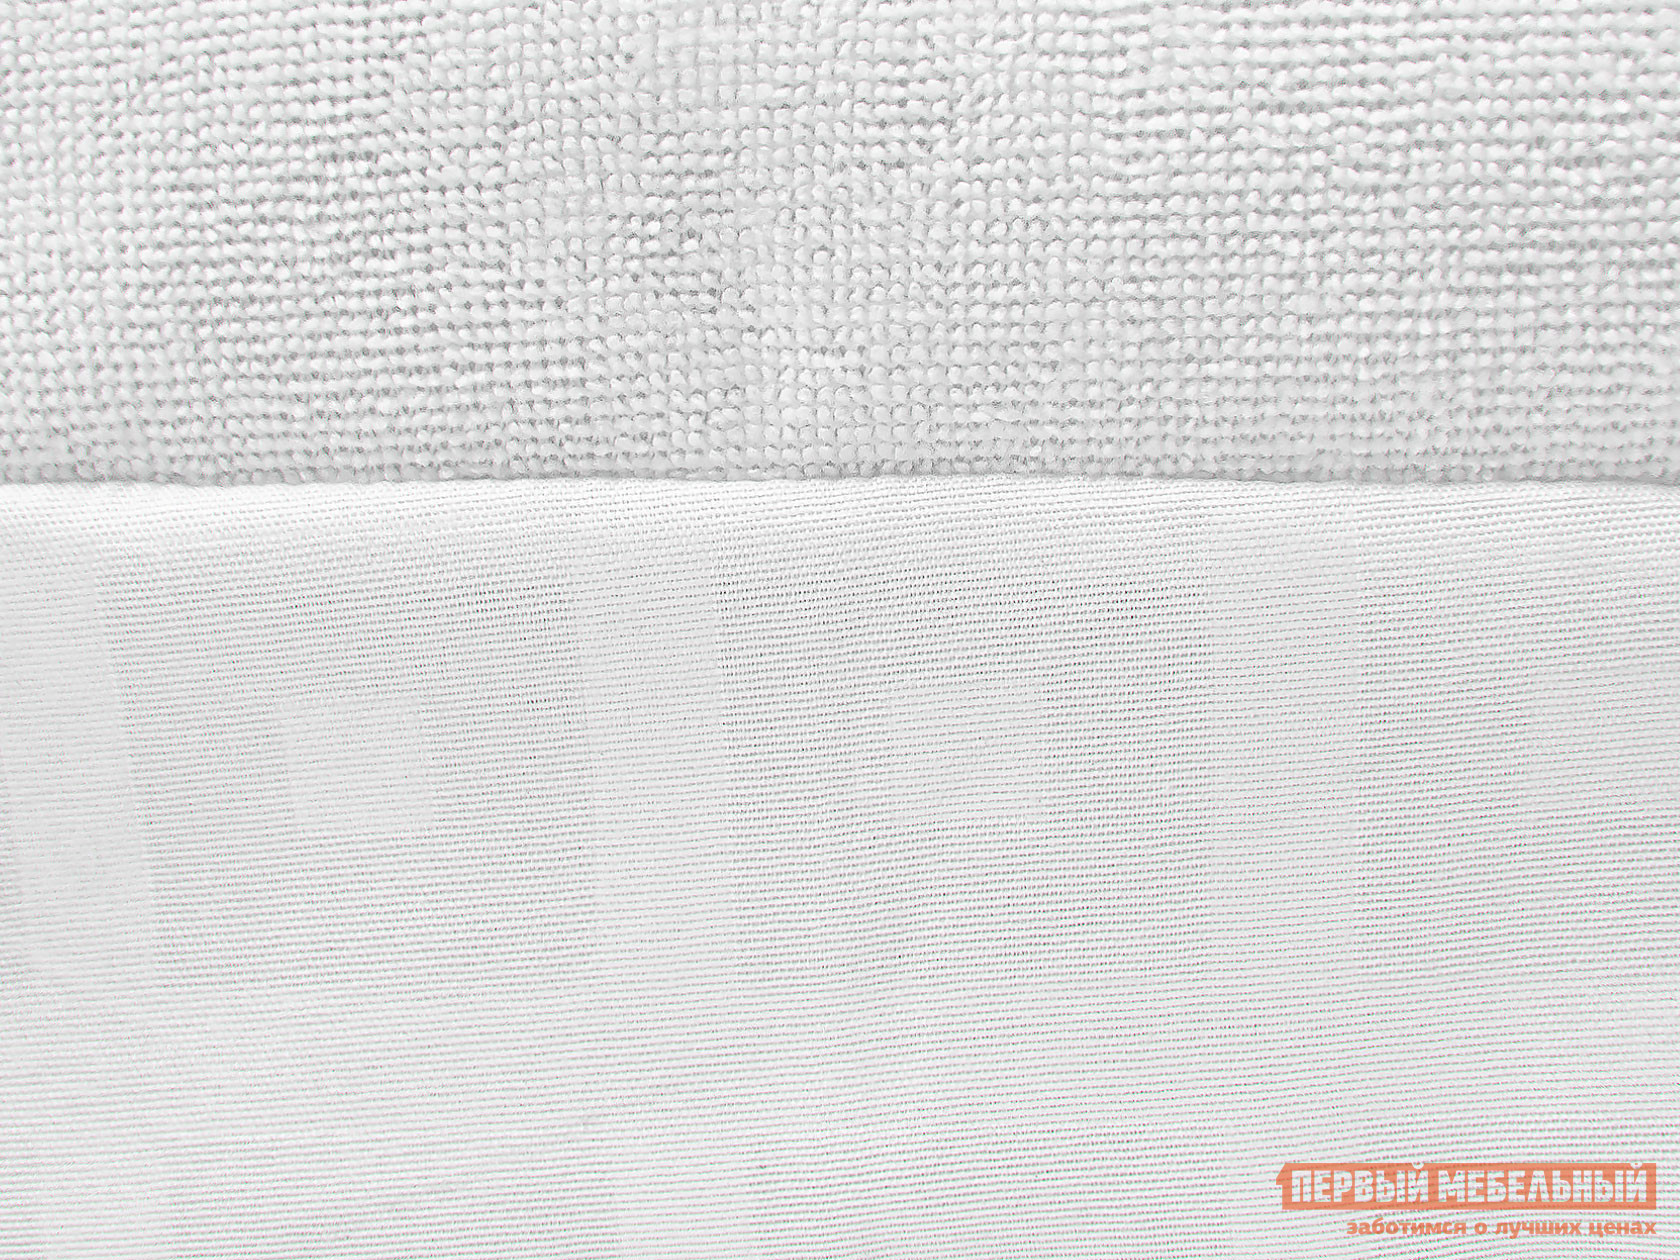 Чехол для матраса  Фулл протекшн с бортом Белый махровый, 900 Х 2000 мм от Первый Мебельный